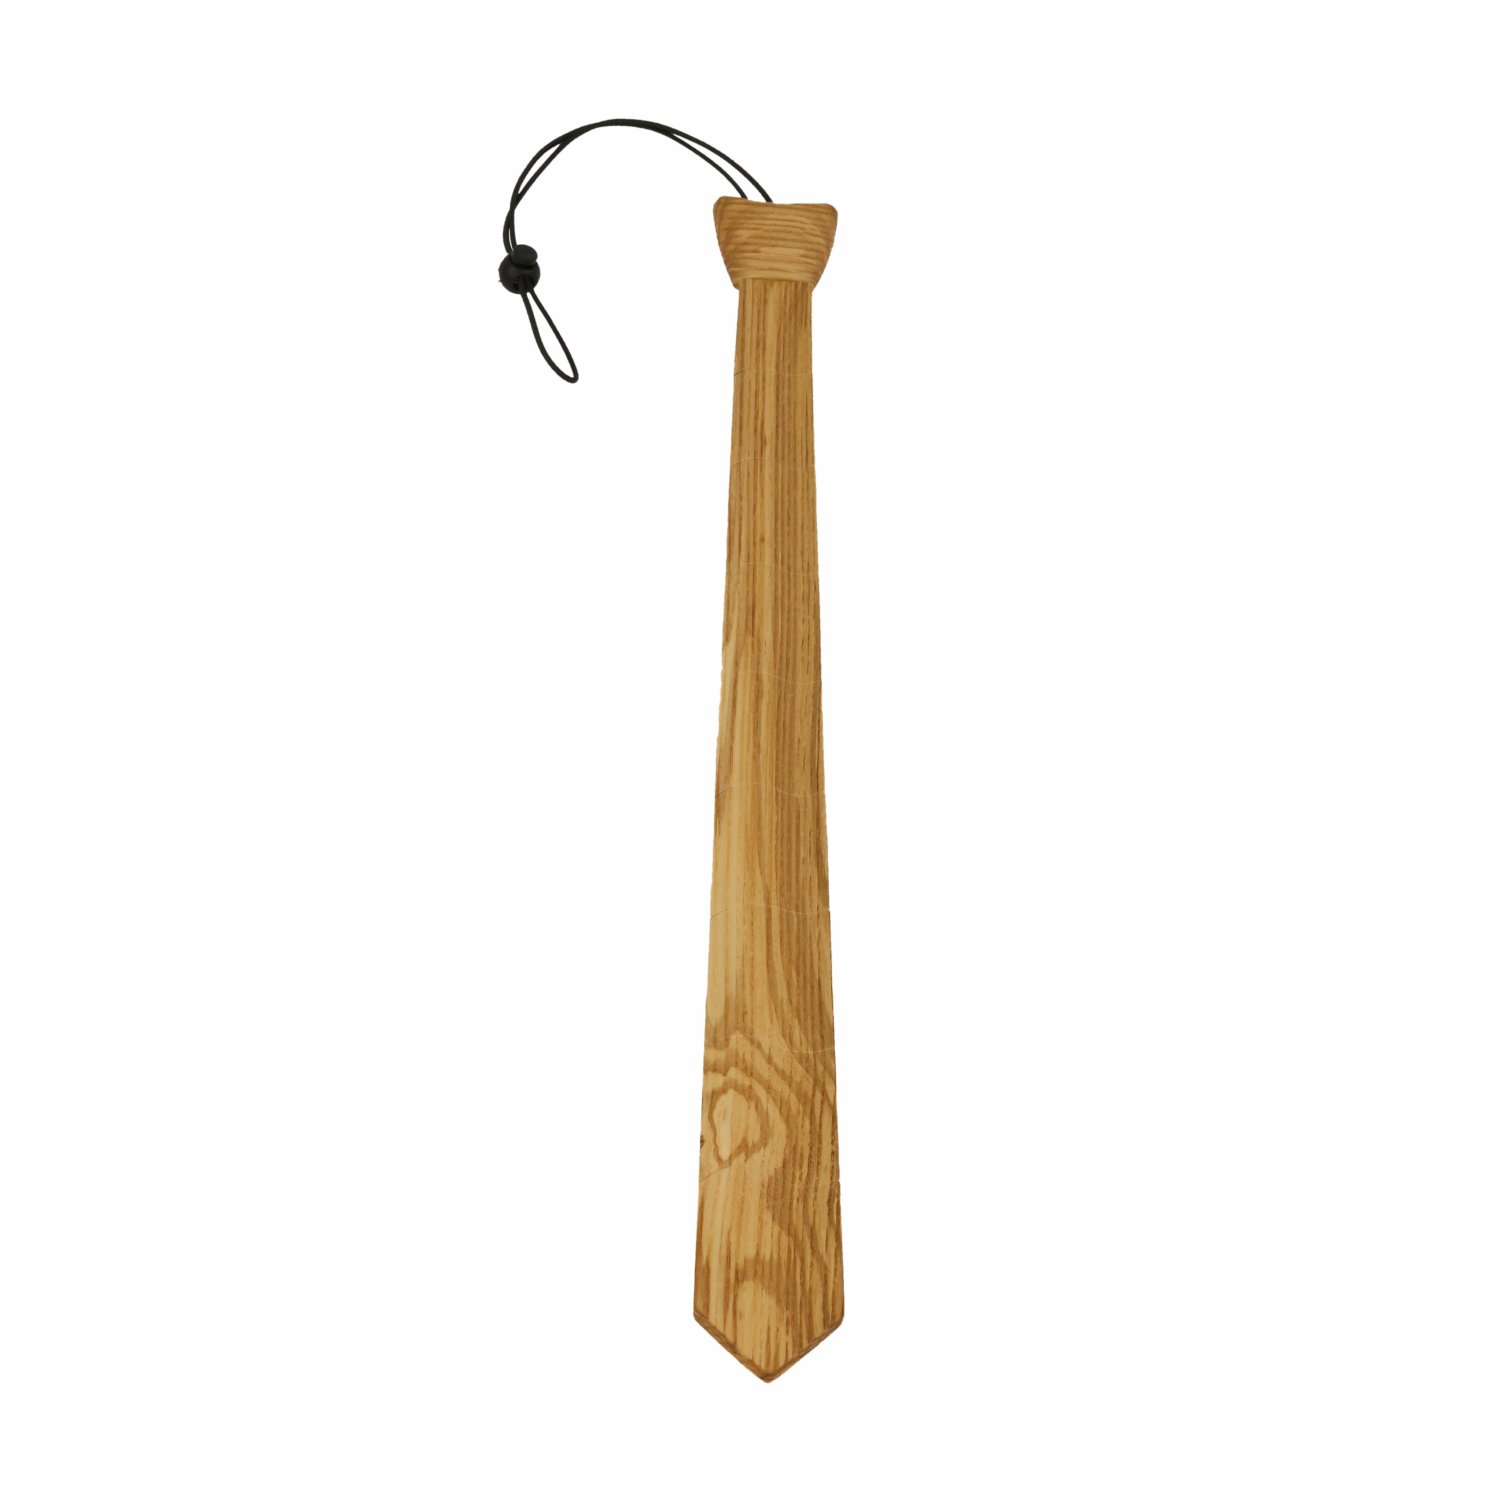 Krawatte aus Holz mit bewglichen Elementen